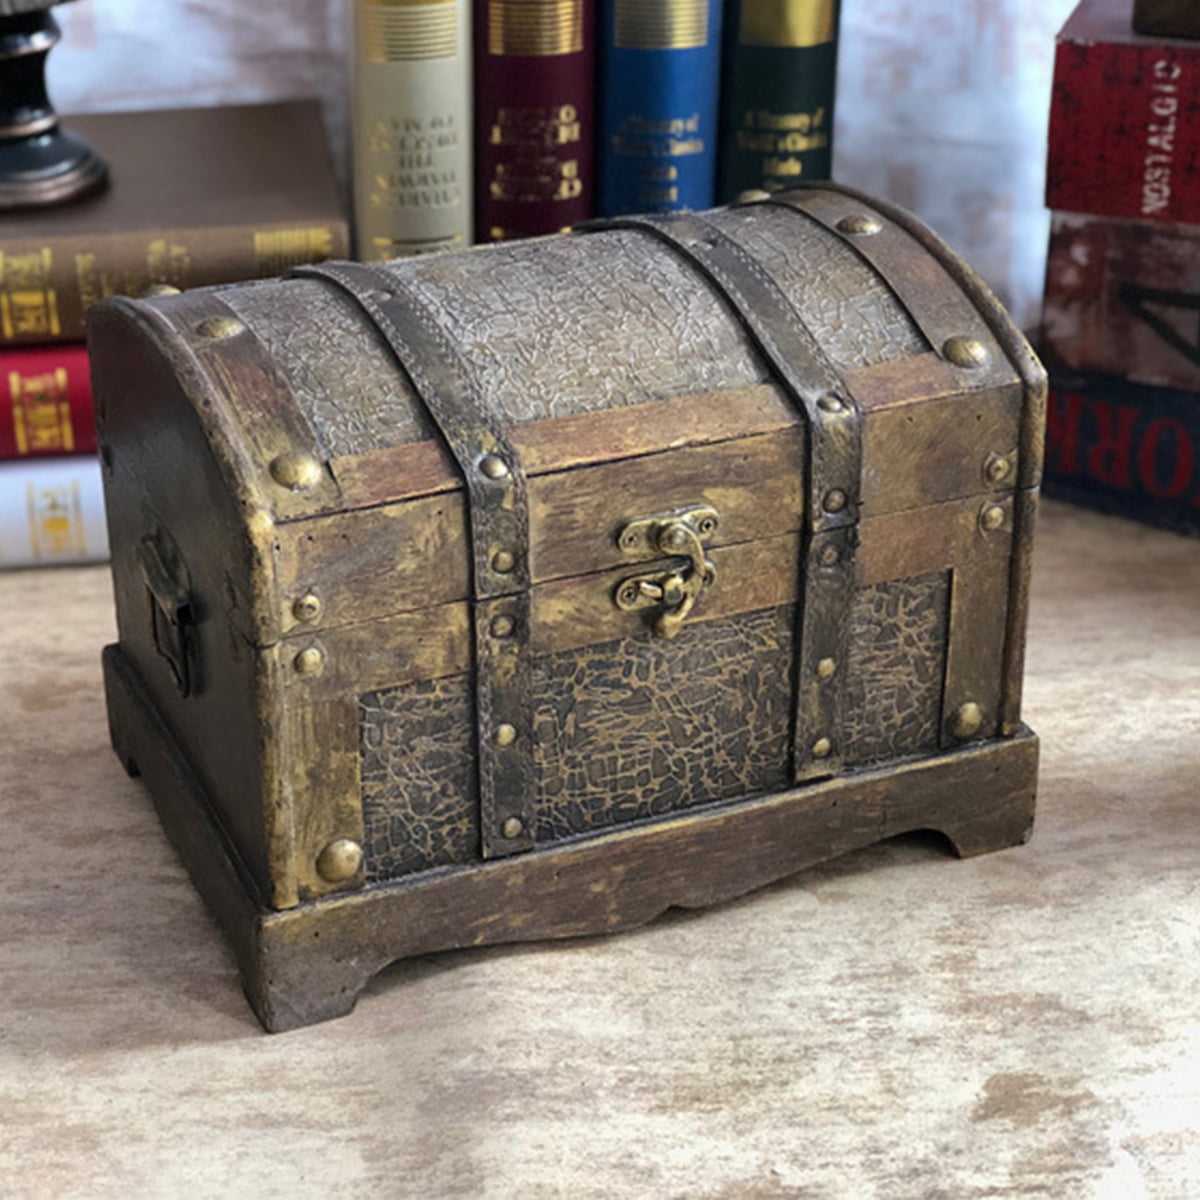 Details about   Wooden Retro Pirate Treasure Chest Box Gem Jewelry Trinket Keepsake Storage Case 